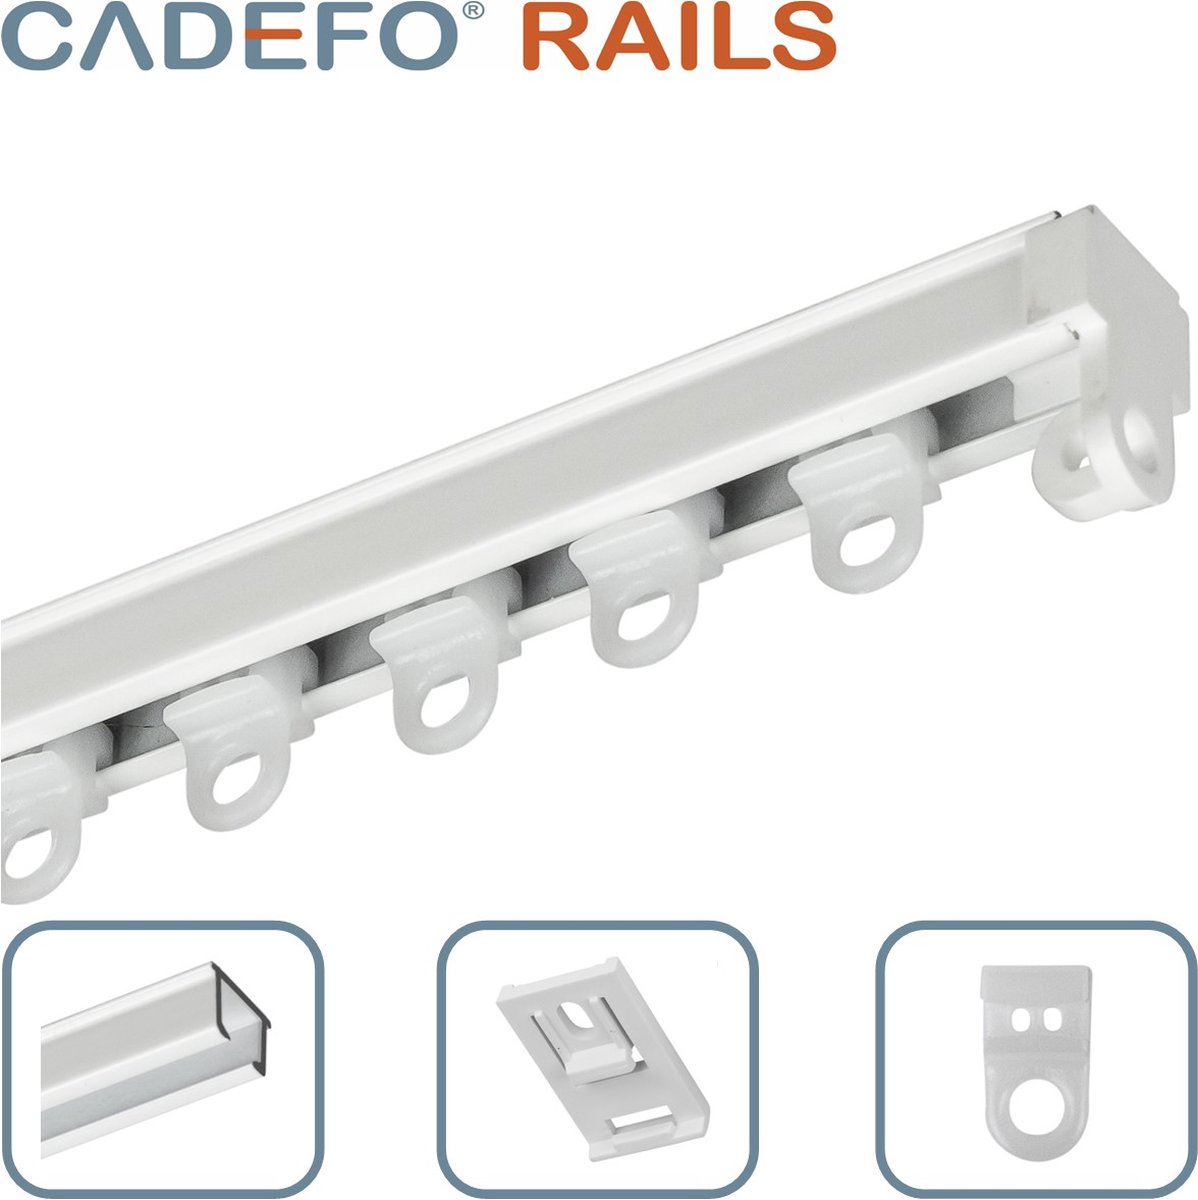 CADEFO RAILS (551 - 600 cm) Gordijnrails - Compleet op maat! - UIT 1 STUK - Leverbaar tot 6 meter - Plafondbevestiging - Lengte 566 cm